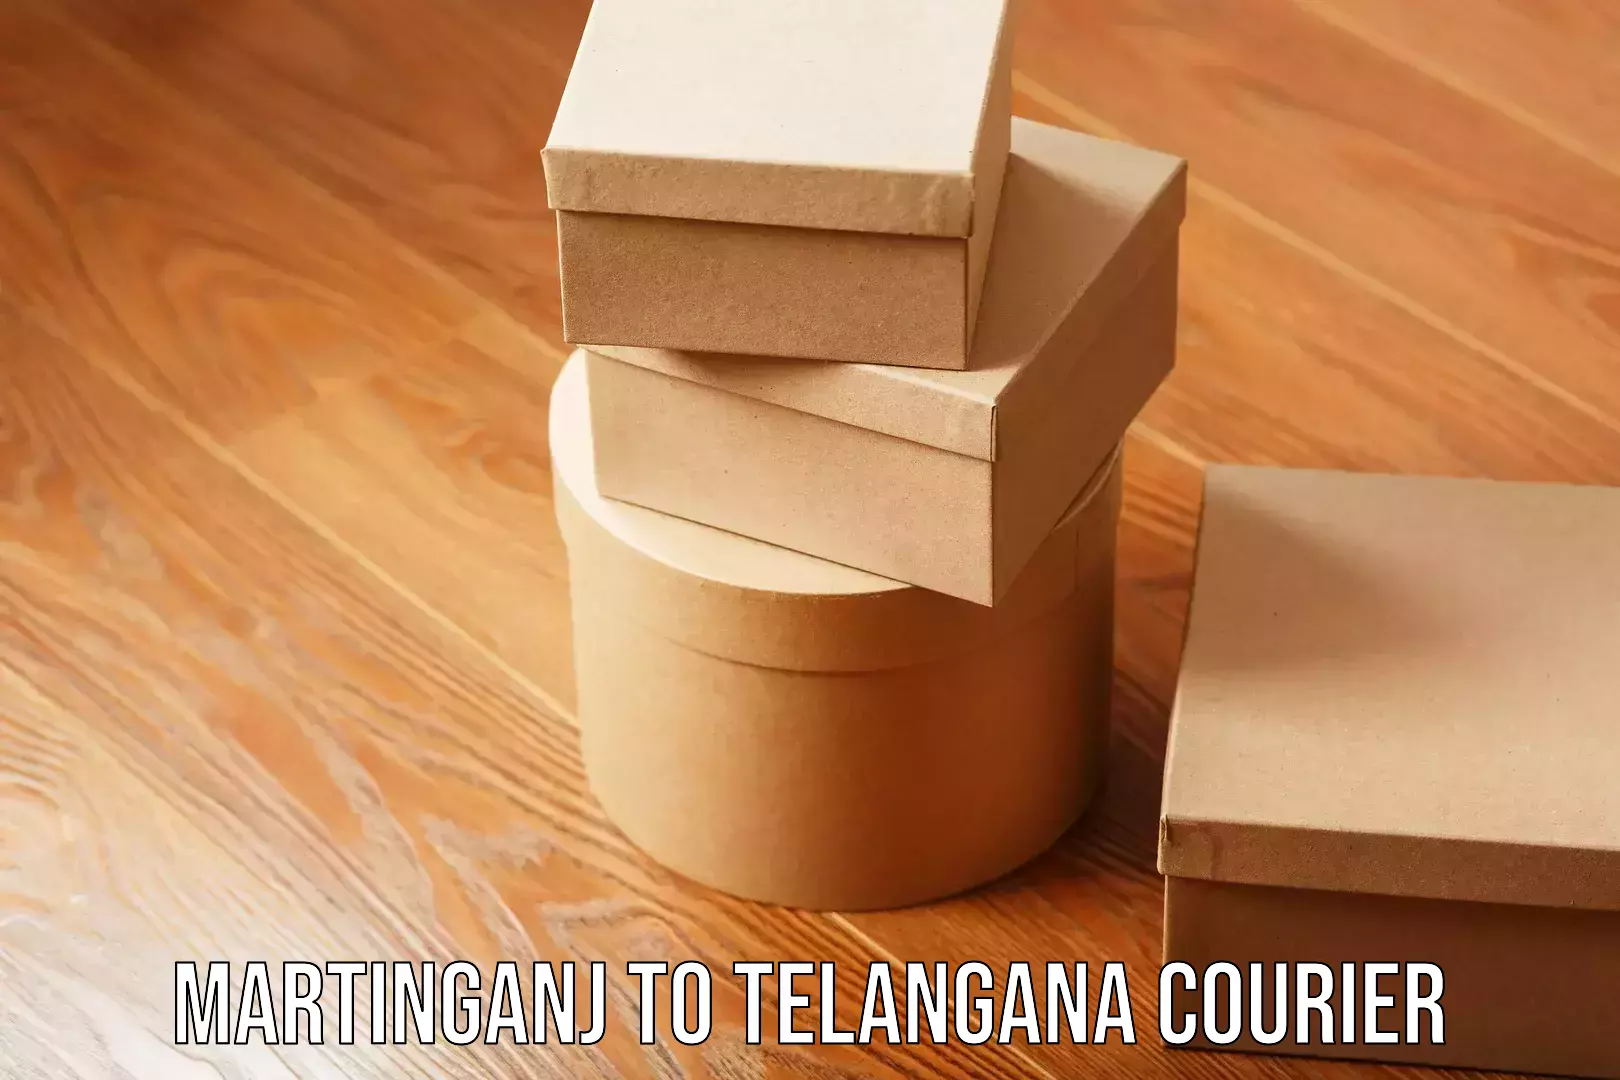 Safe furniture moving Martinganj to Telangana